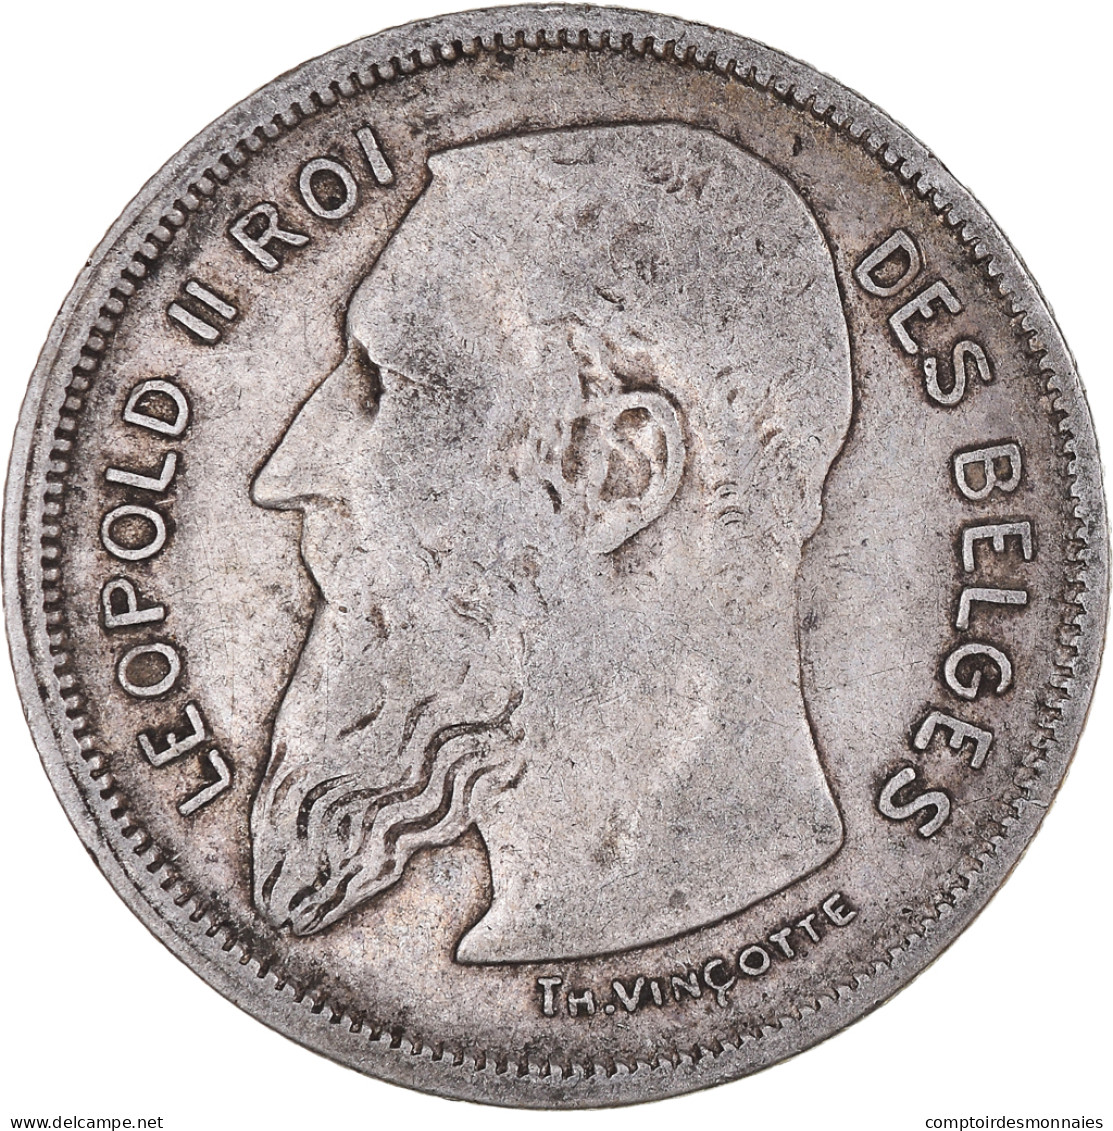 Monnaie, Belgique, Leopold II, 2 Francs, 2 Frank, 1909, TB+, Argent, KM:58.1 - 2 Frank